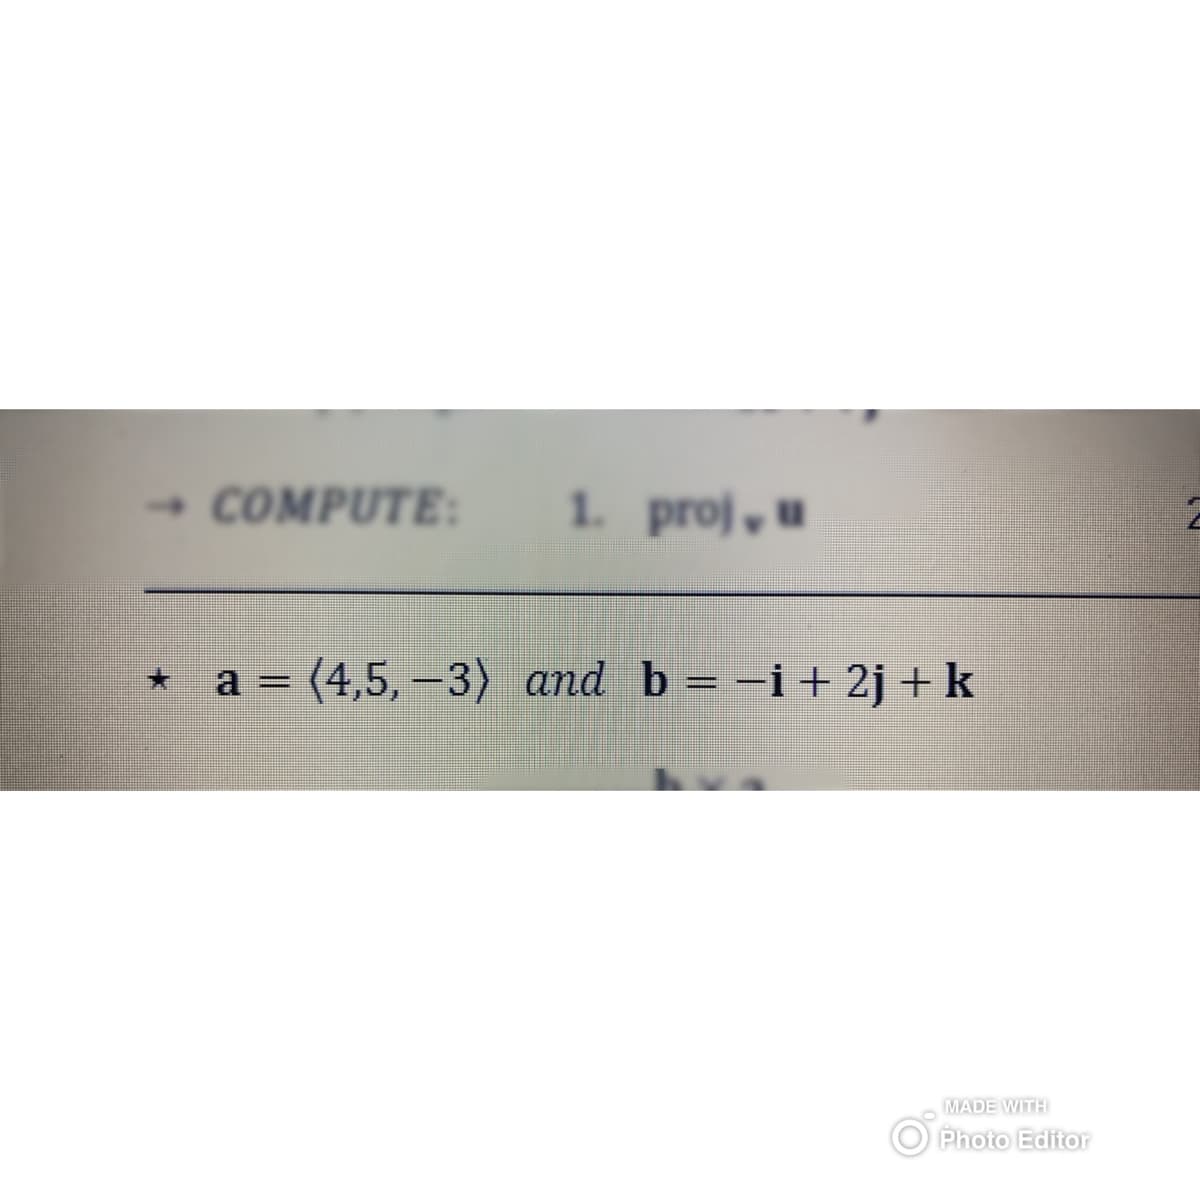 → COMPUTE:
1. proj, u
a =
= (4,5,-3) and b = -i+2j + k
MADE WITH
Photo Editor